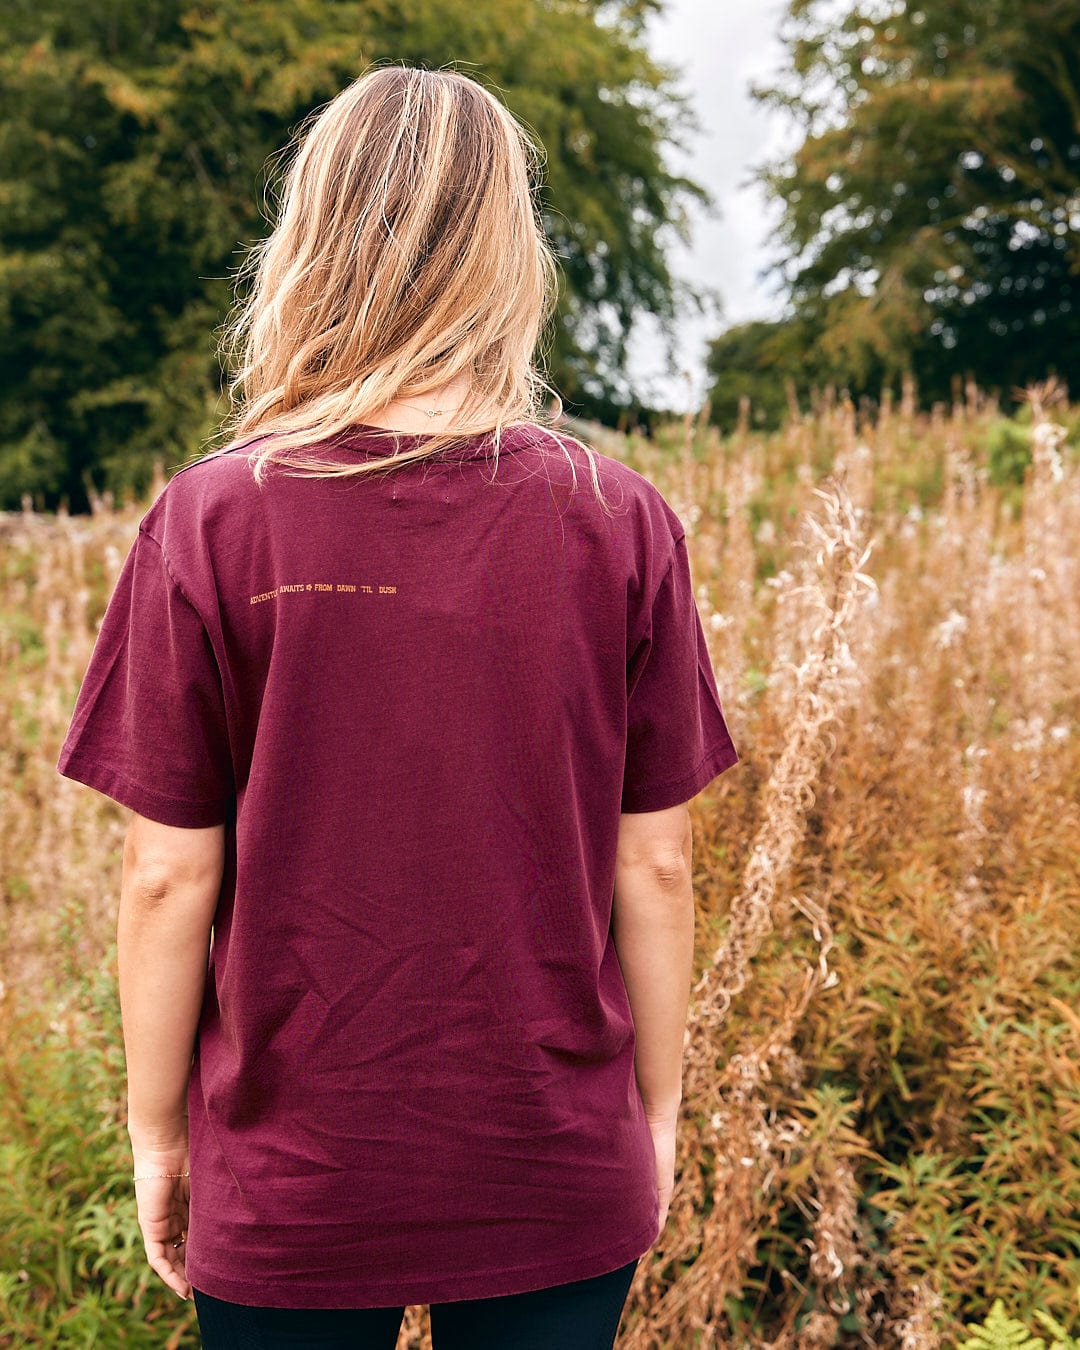 A woman wearing an Adventure Awaits - Womens Short Sleeve T-Shirt - Dark Purple by Saltrock standing in a field.